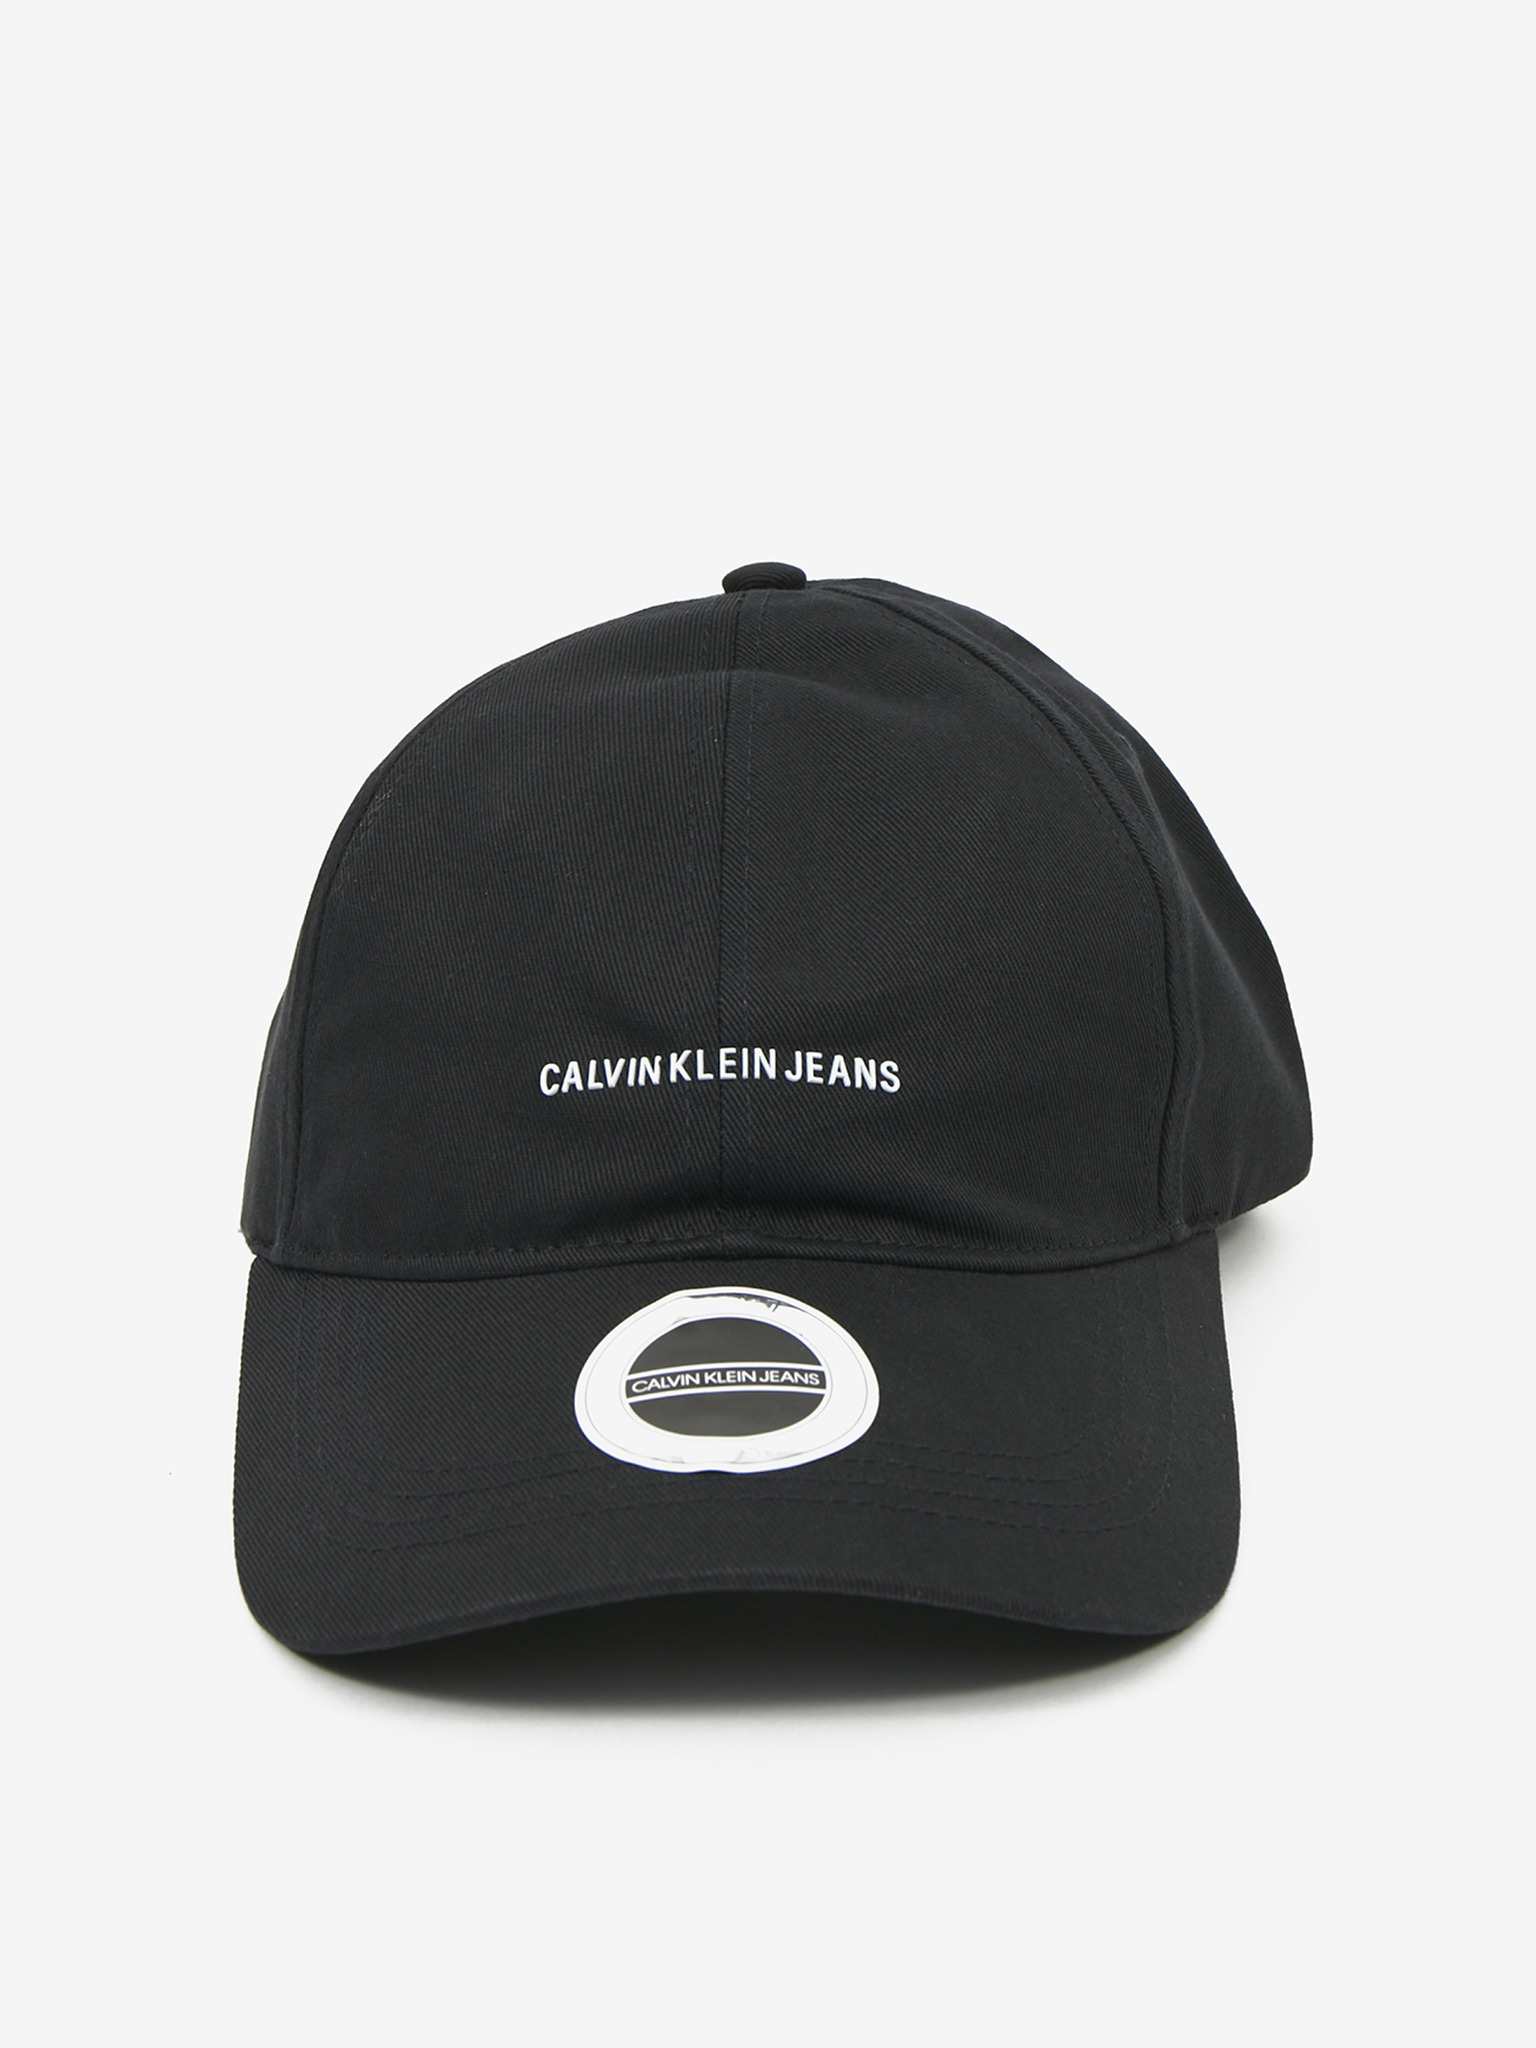 Calvin Klein Jeans - Institutional Micro Cap